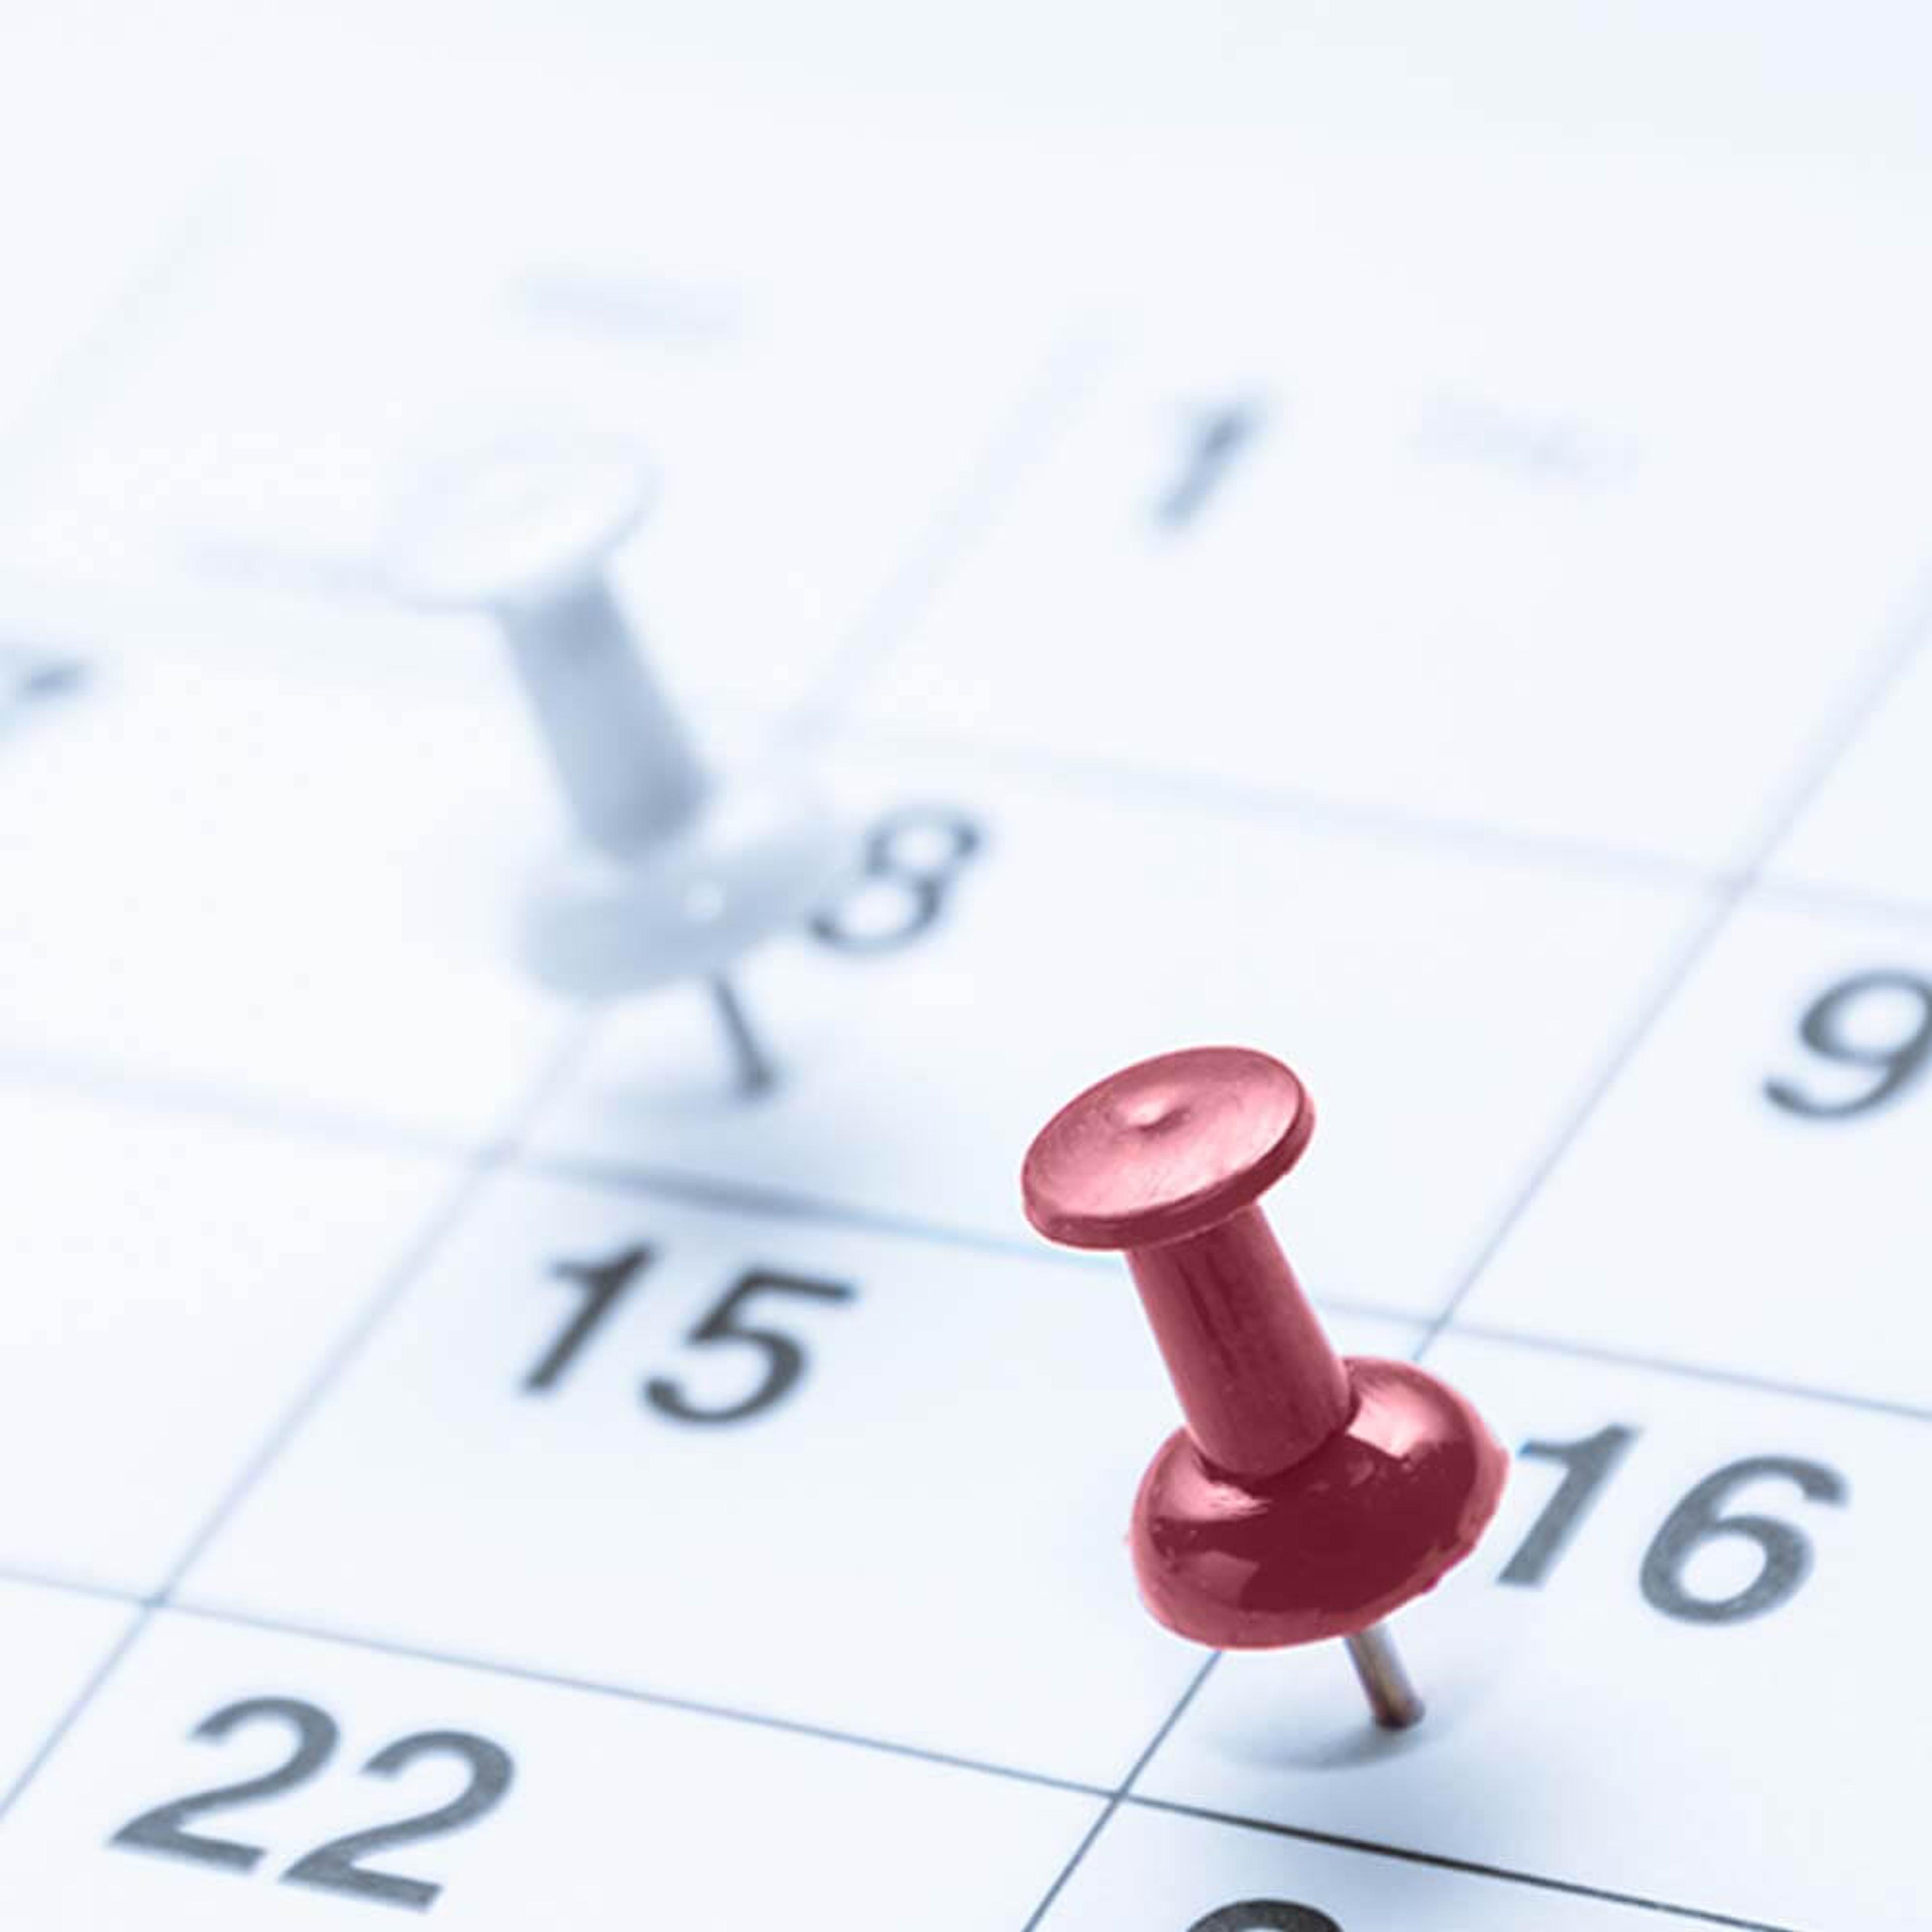 calendar - schedule a meeting